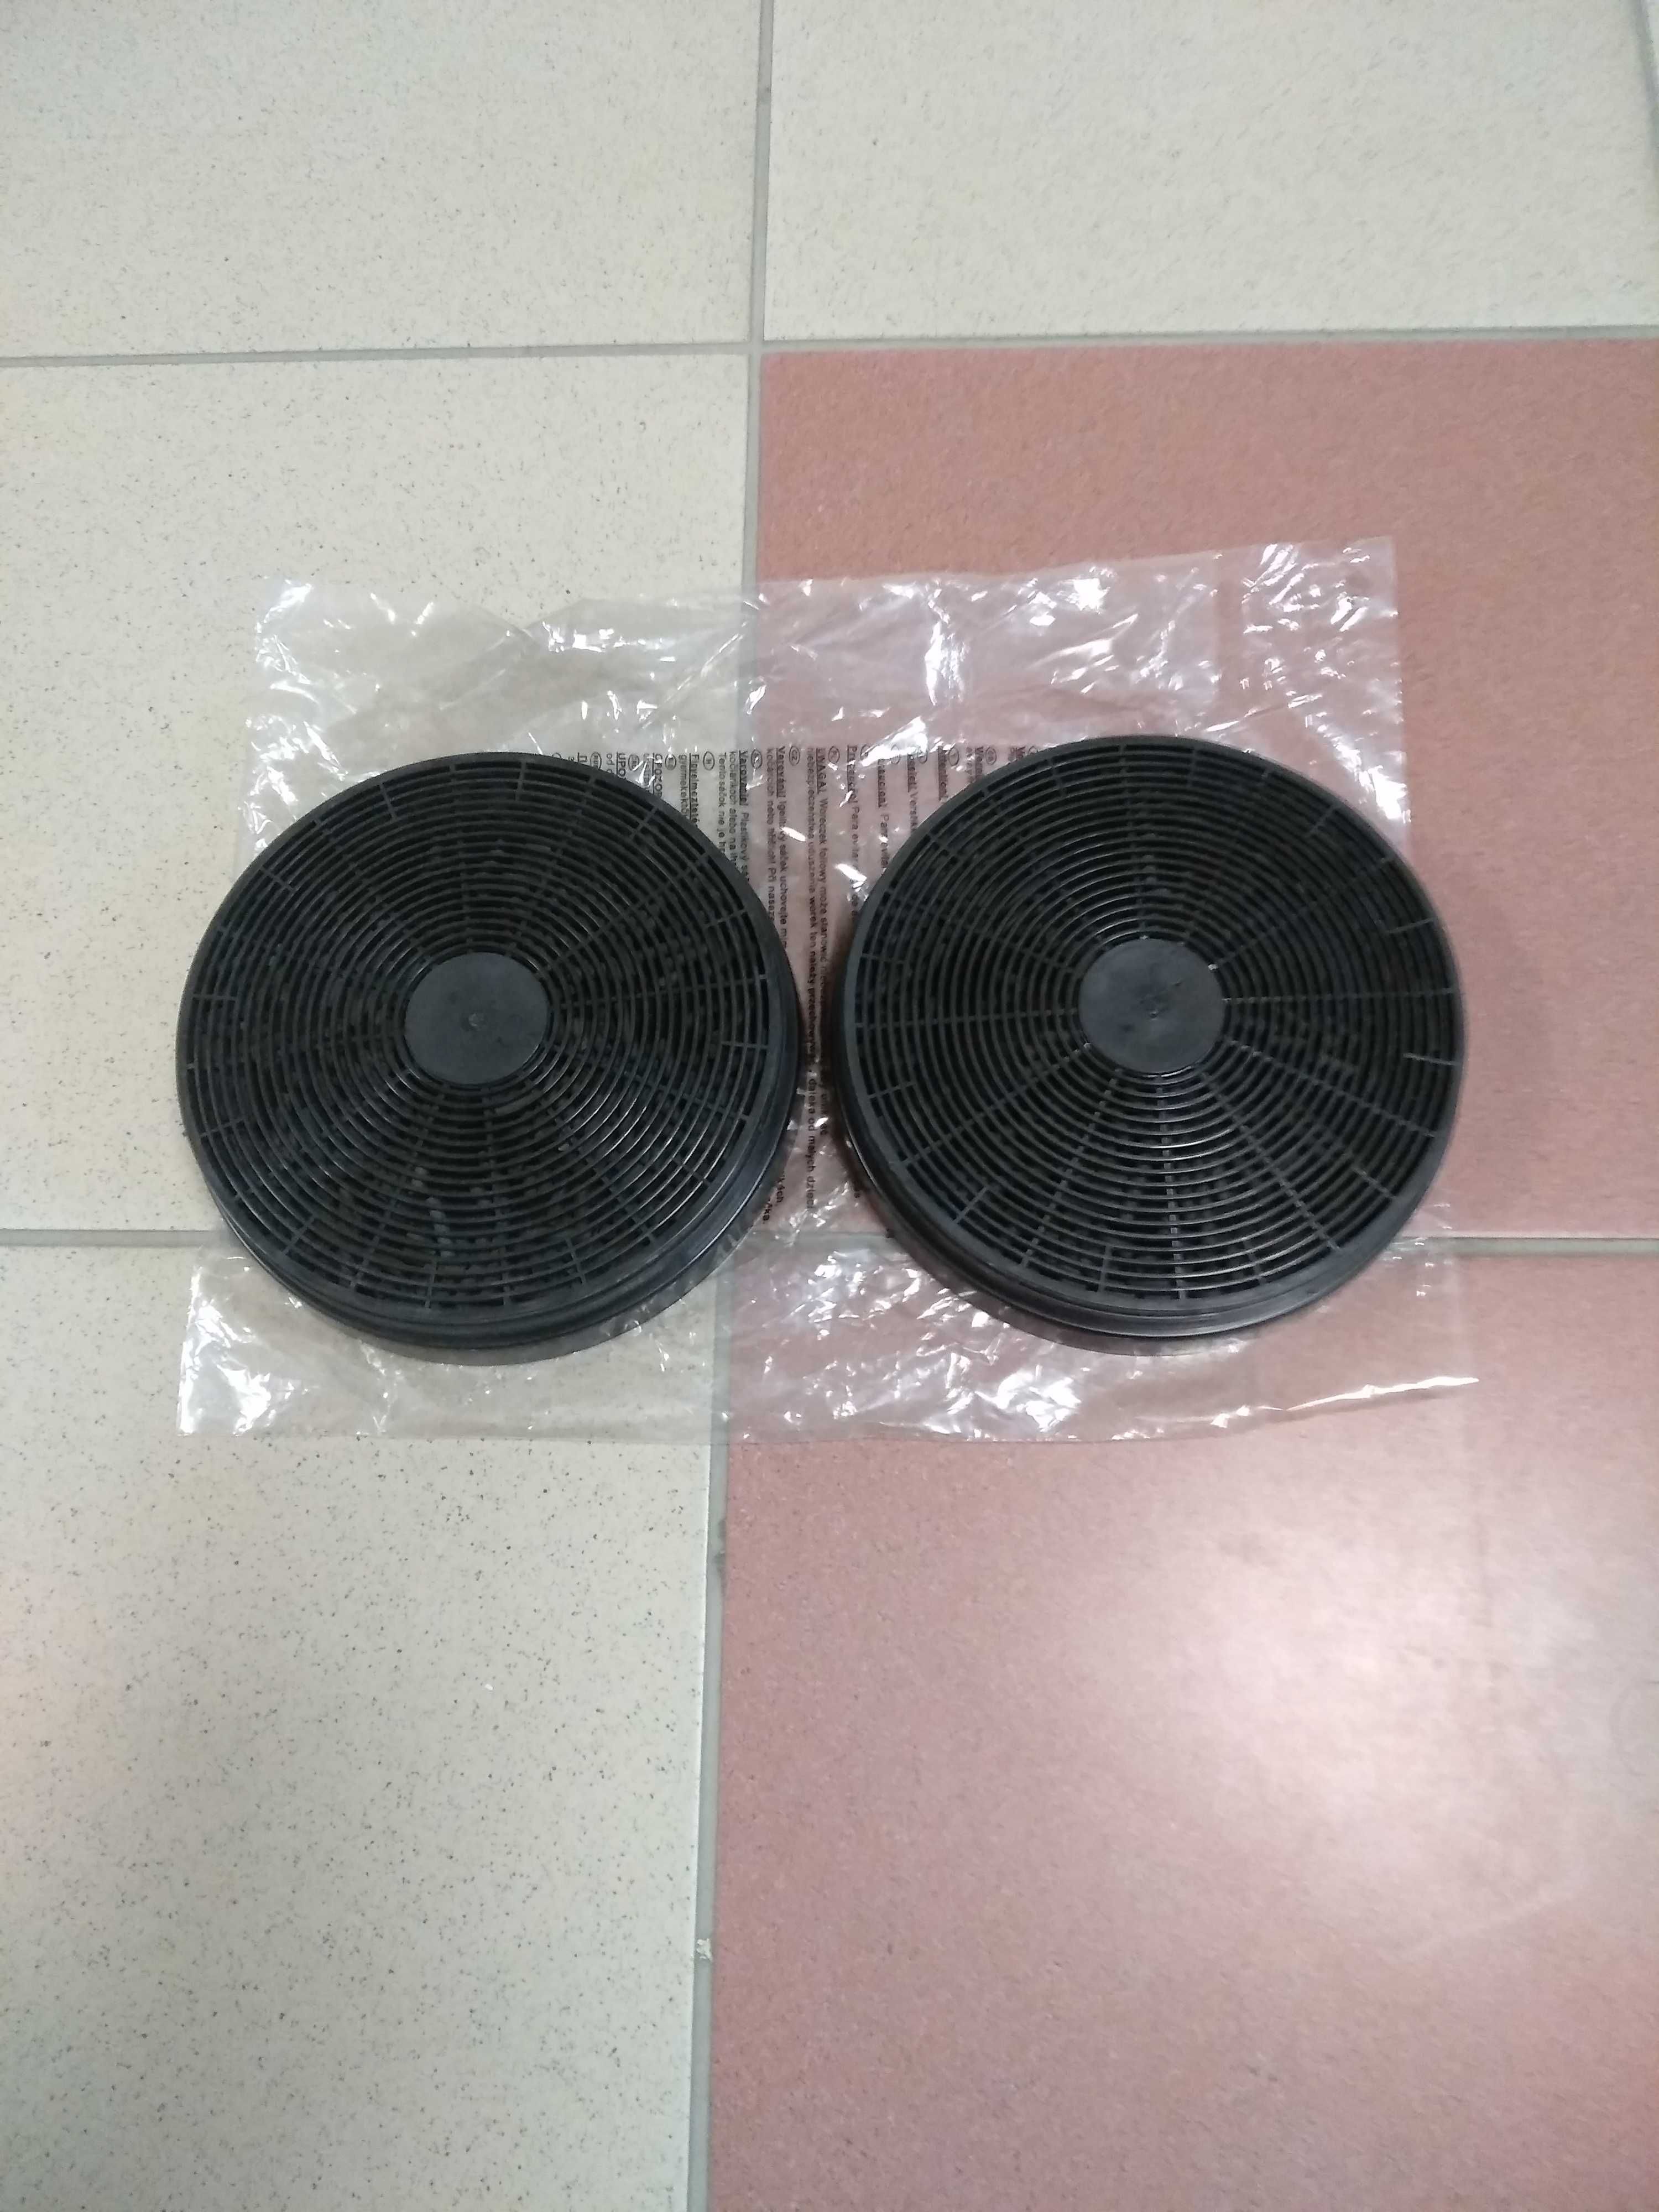 Dwa filtry wymienne węglowe do pochłaniacza kuchennego